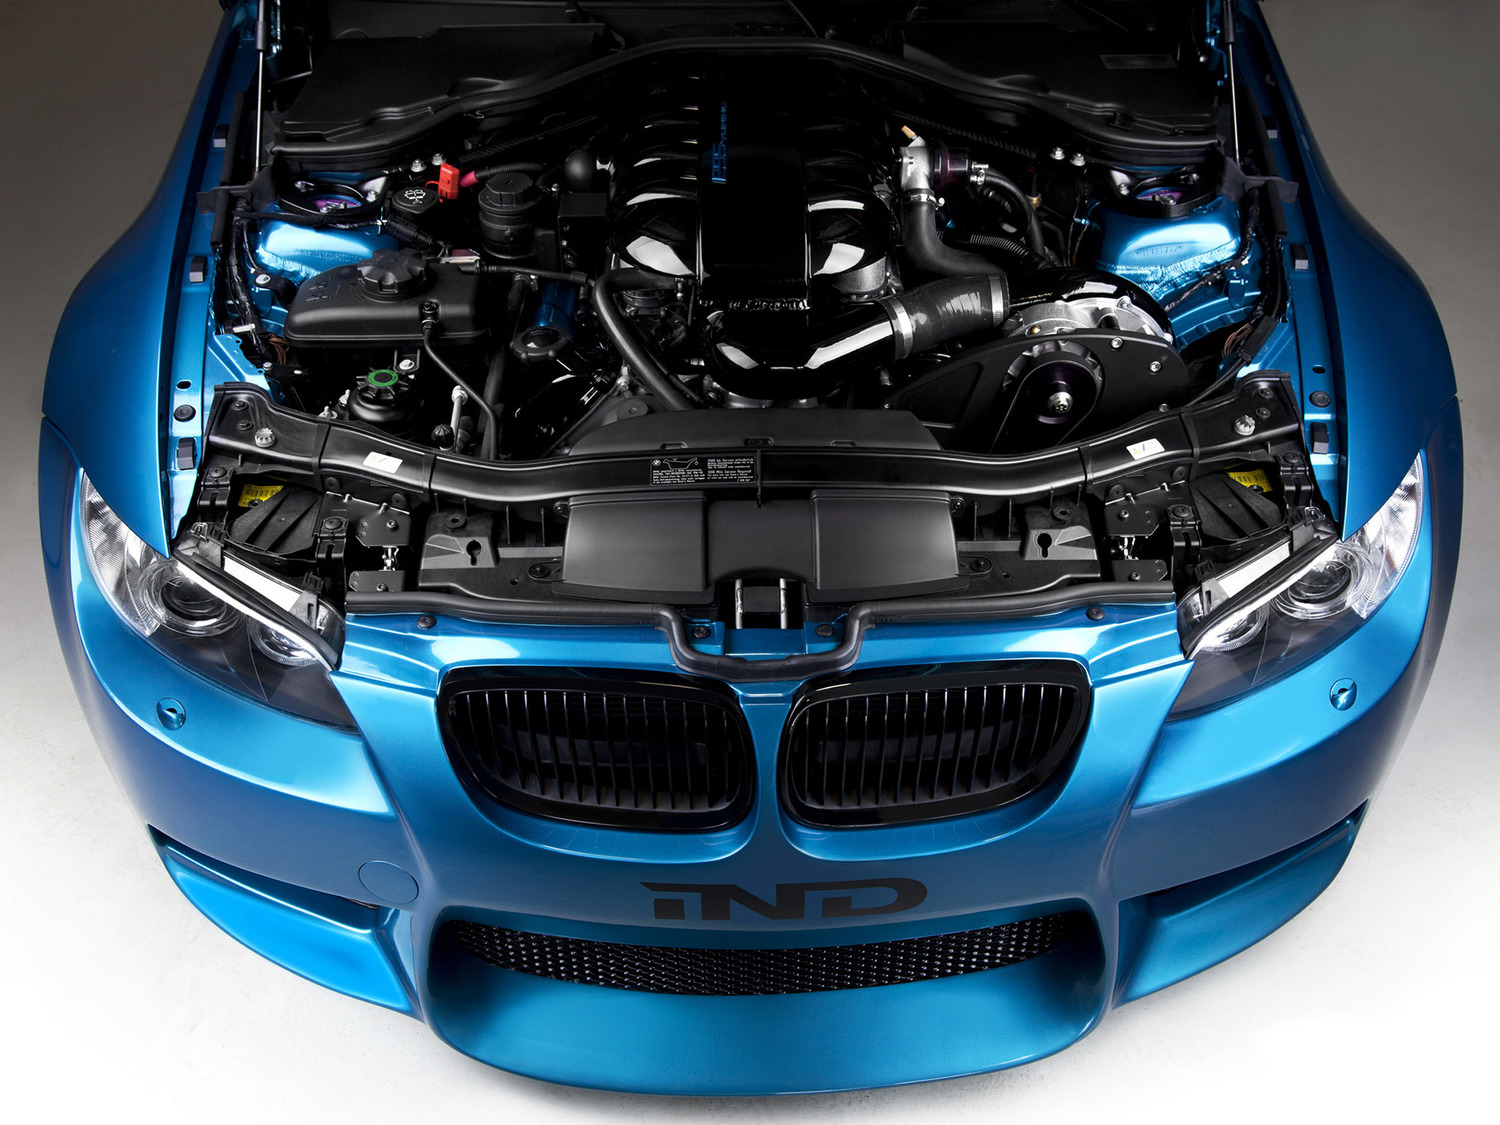 BMW e92 m3 engine